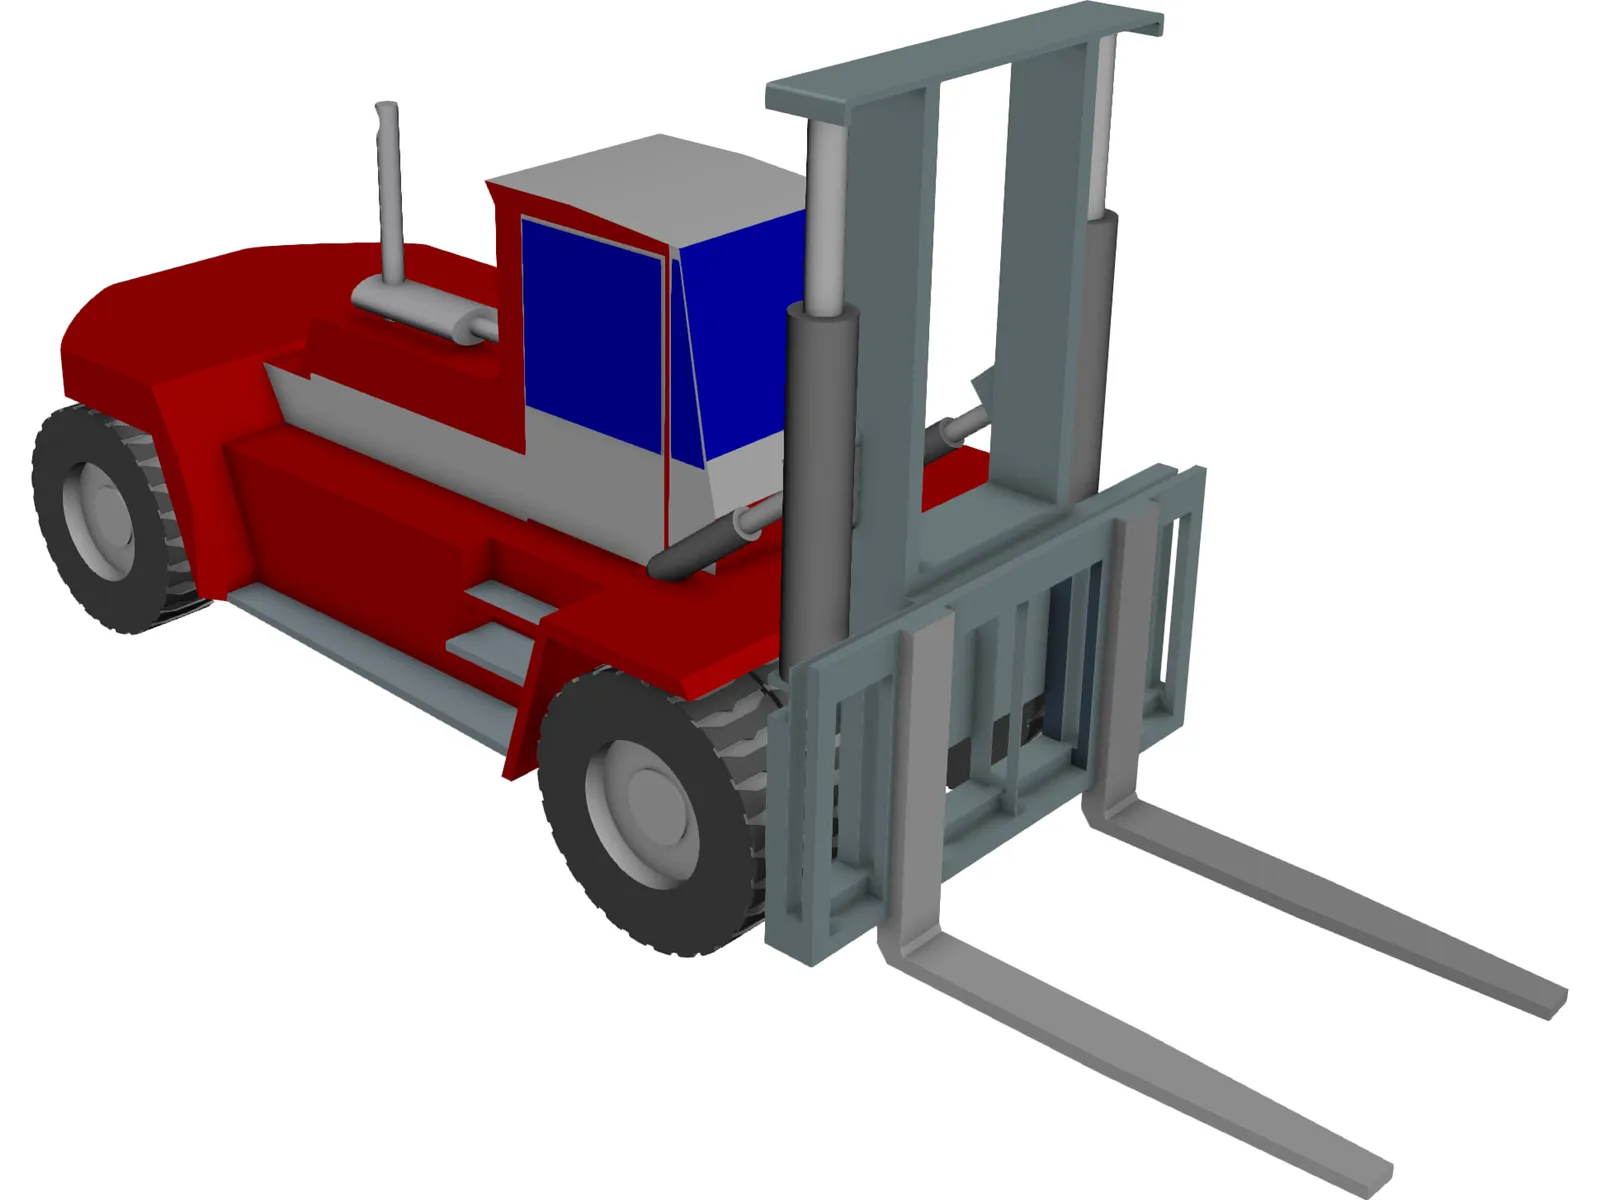 Kalmar DCD320 Forklift 3D Model